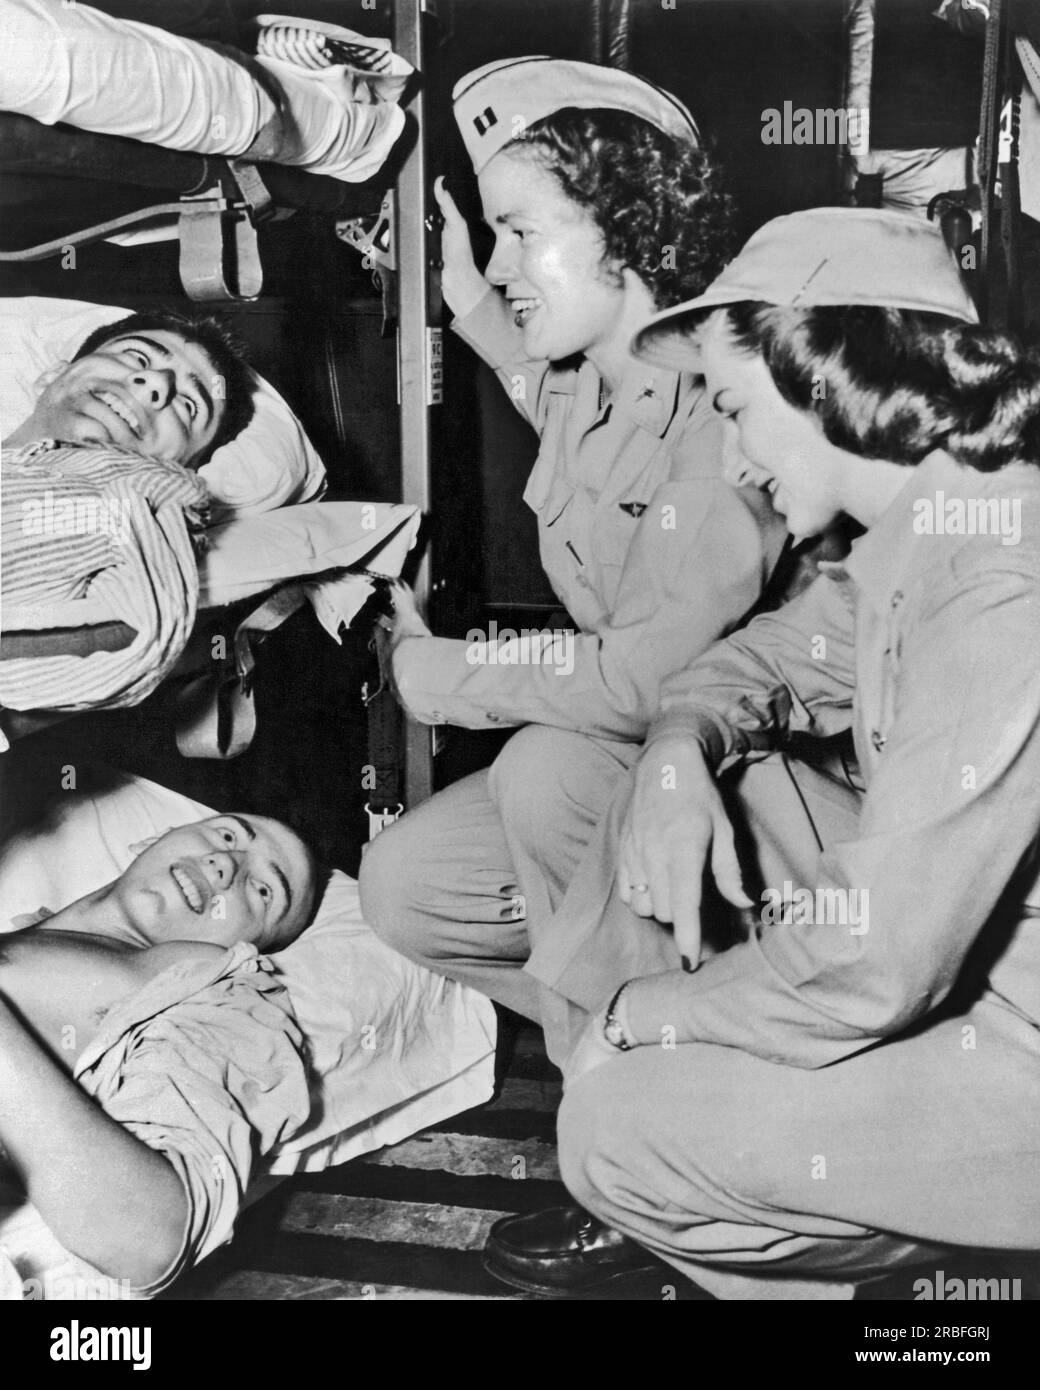 Corée : 20 avril 1951 deux soldats blessés sont réconfortés par les infirmières de l'équipe d'évacuation aérienne. Soixante-trois patients ont été transportés en Californie sur un vol de cinquante heures sur un avion de transport C-97. Banque D'Images